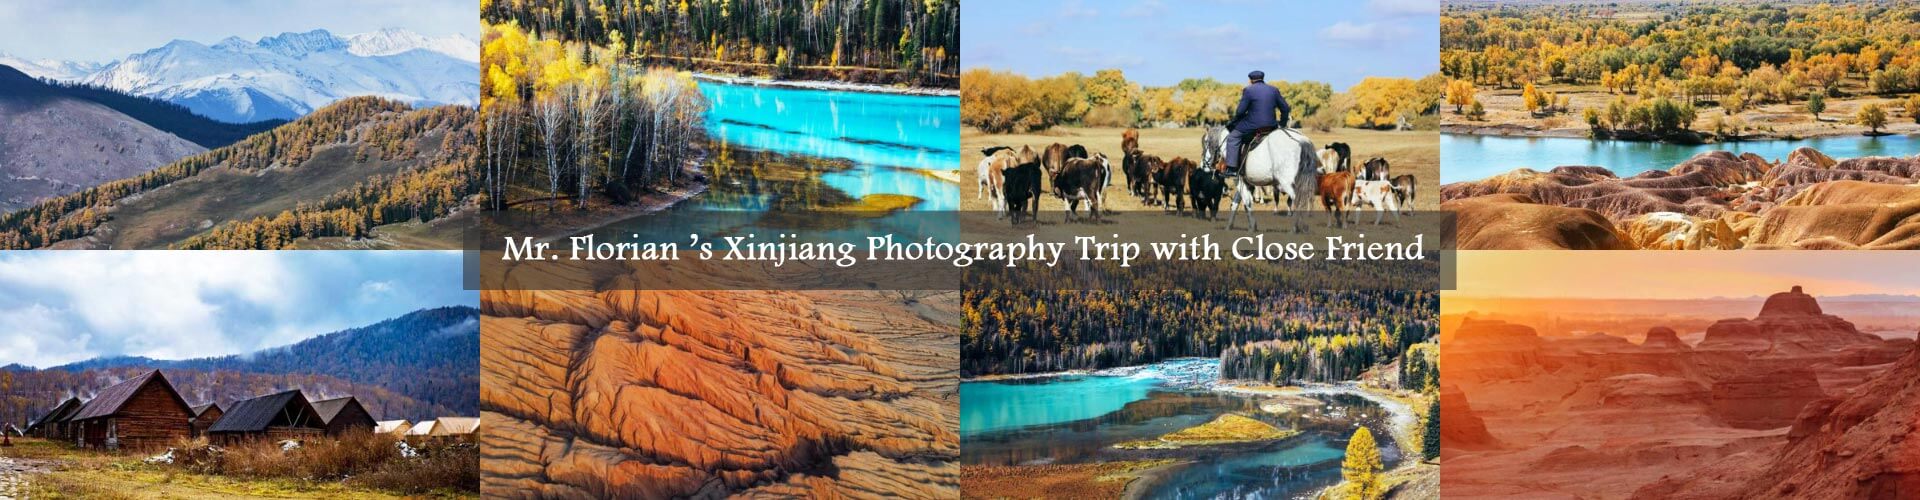 Xinjiang Photography Tour